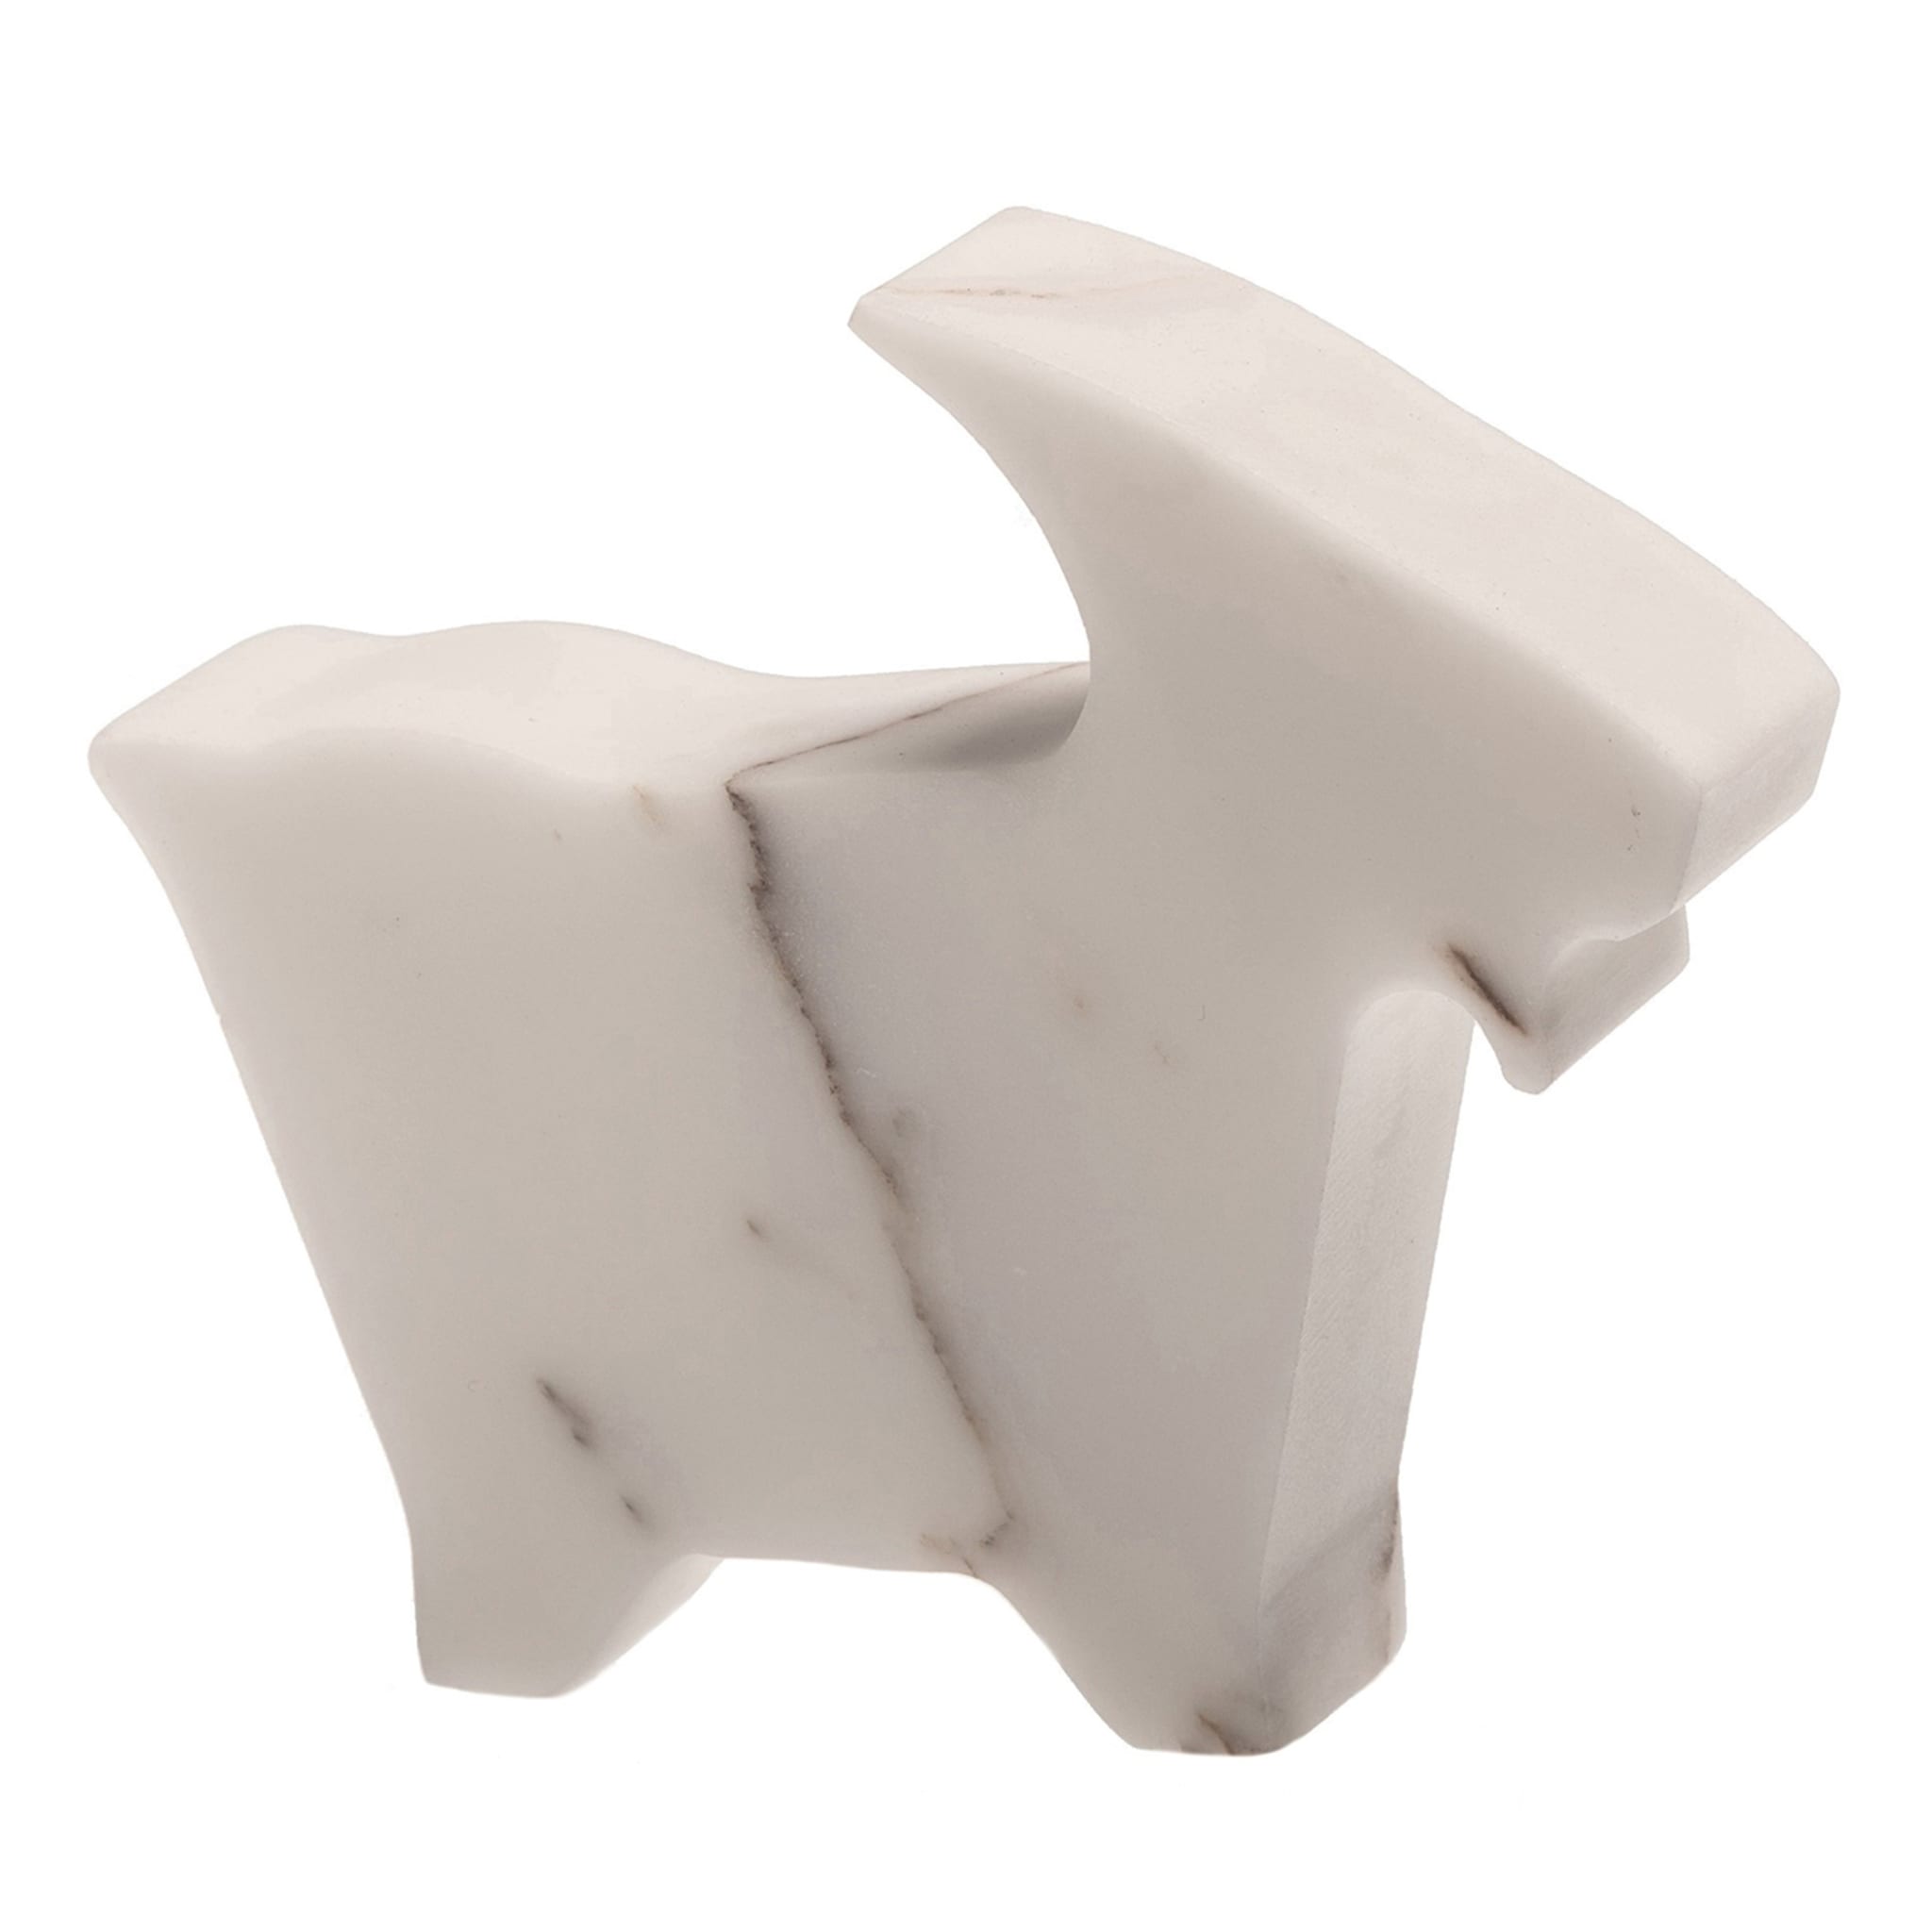 Petite statuette blanche de chèvre par Alessandra Grasso - Vue principale